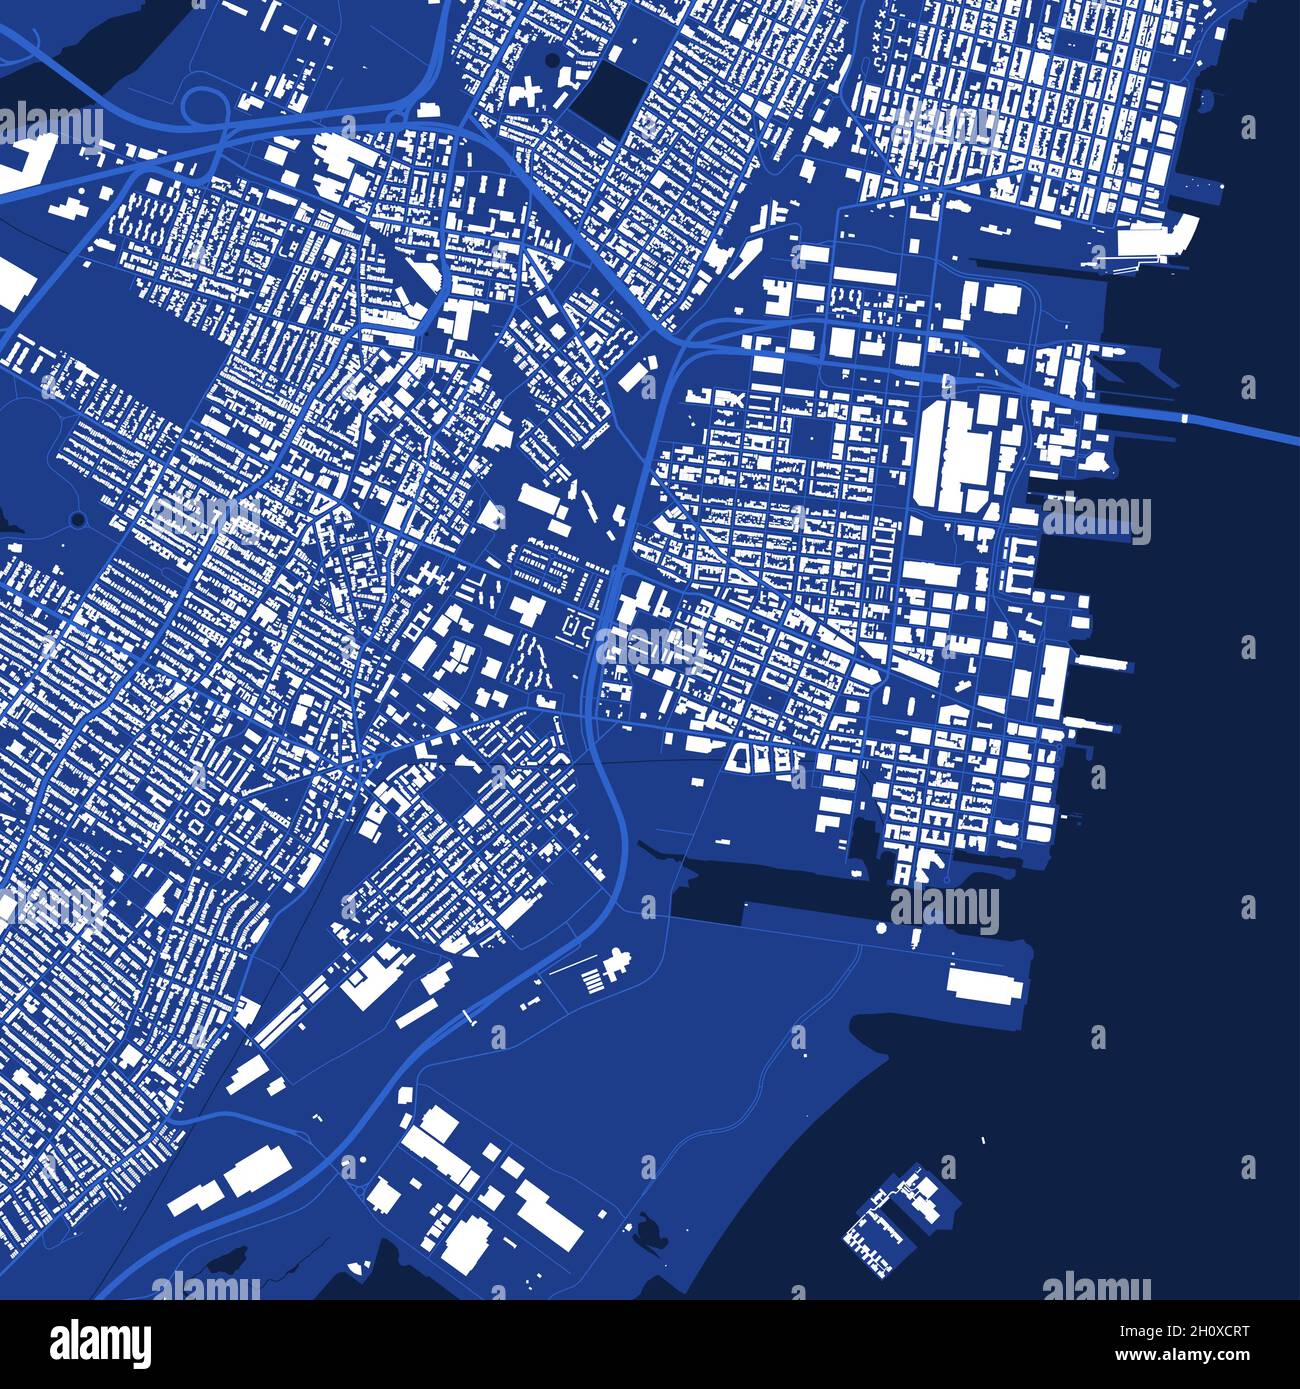 Detailliertes blaues Kartenplakat des Verwaltungsgebiets der Stadt Jersey. Panorama der Skyline. Dekorative Grafik Touristenkarte des Territoriums von Jersey. Lizenzfreie Vektorgrafik Stock Vektor